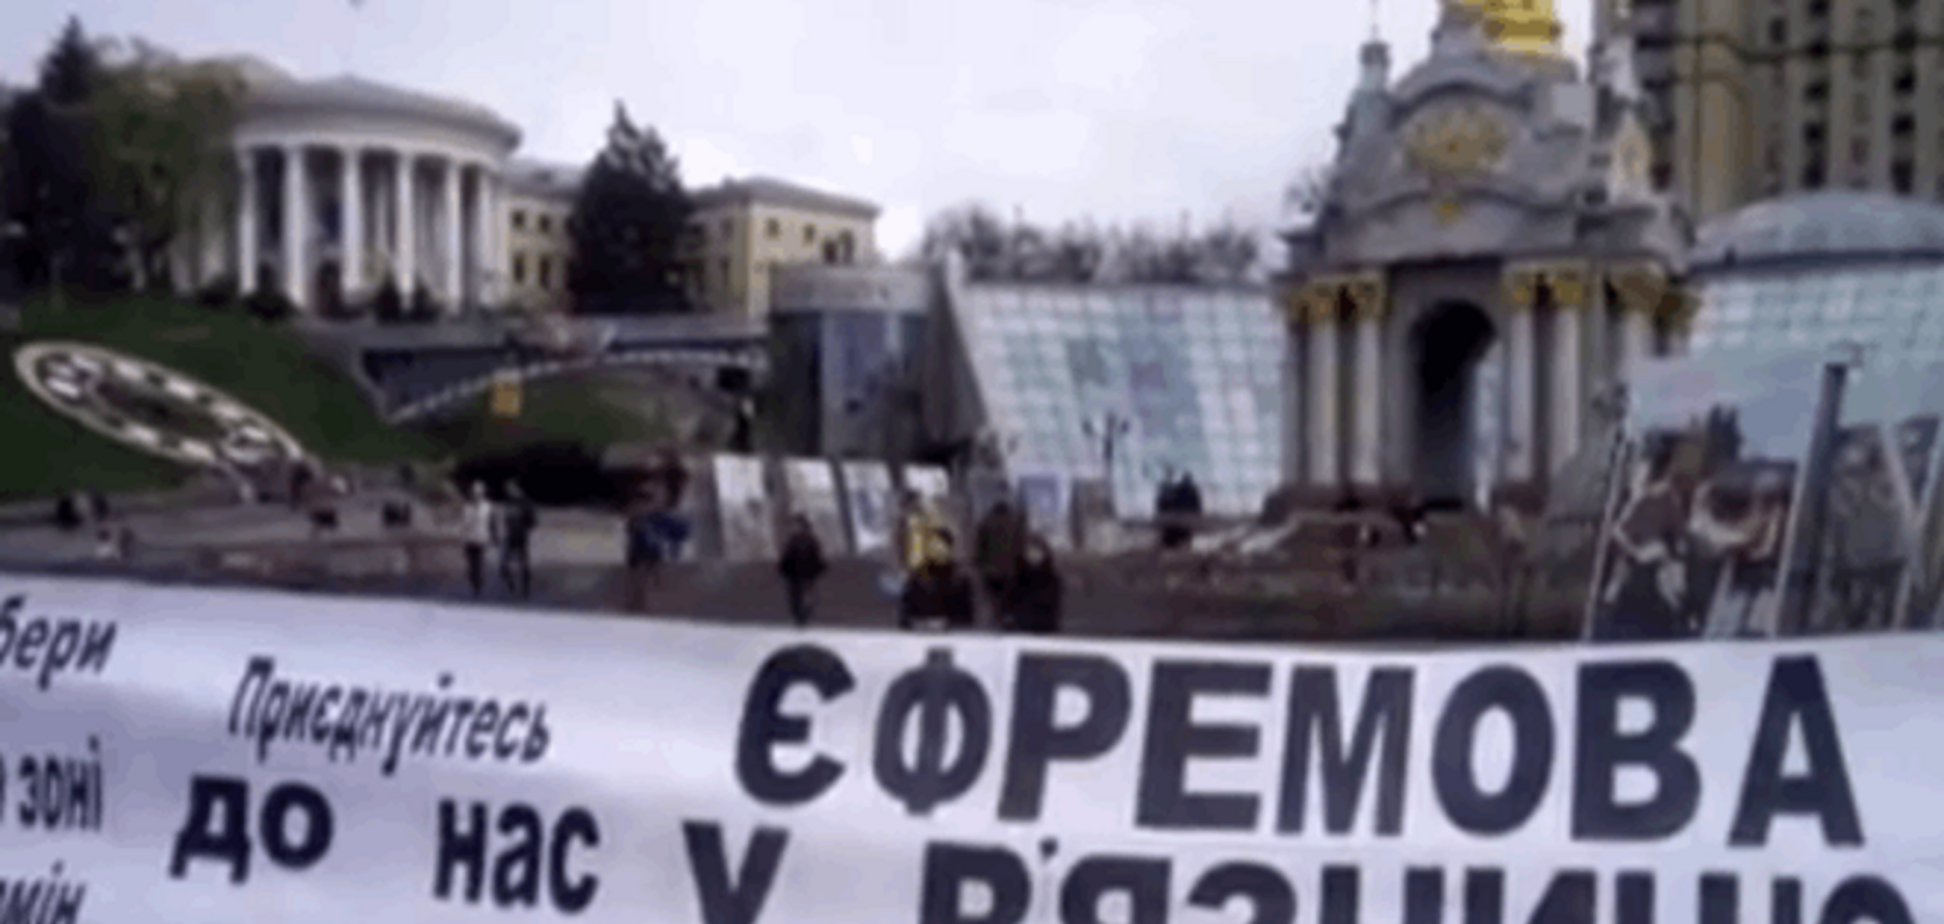 'Ефремова на нары!' В Киеве требовали посадить 'хозяев' Луганщины - видеофакт